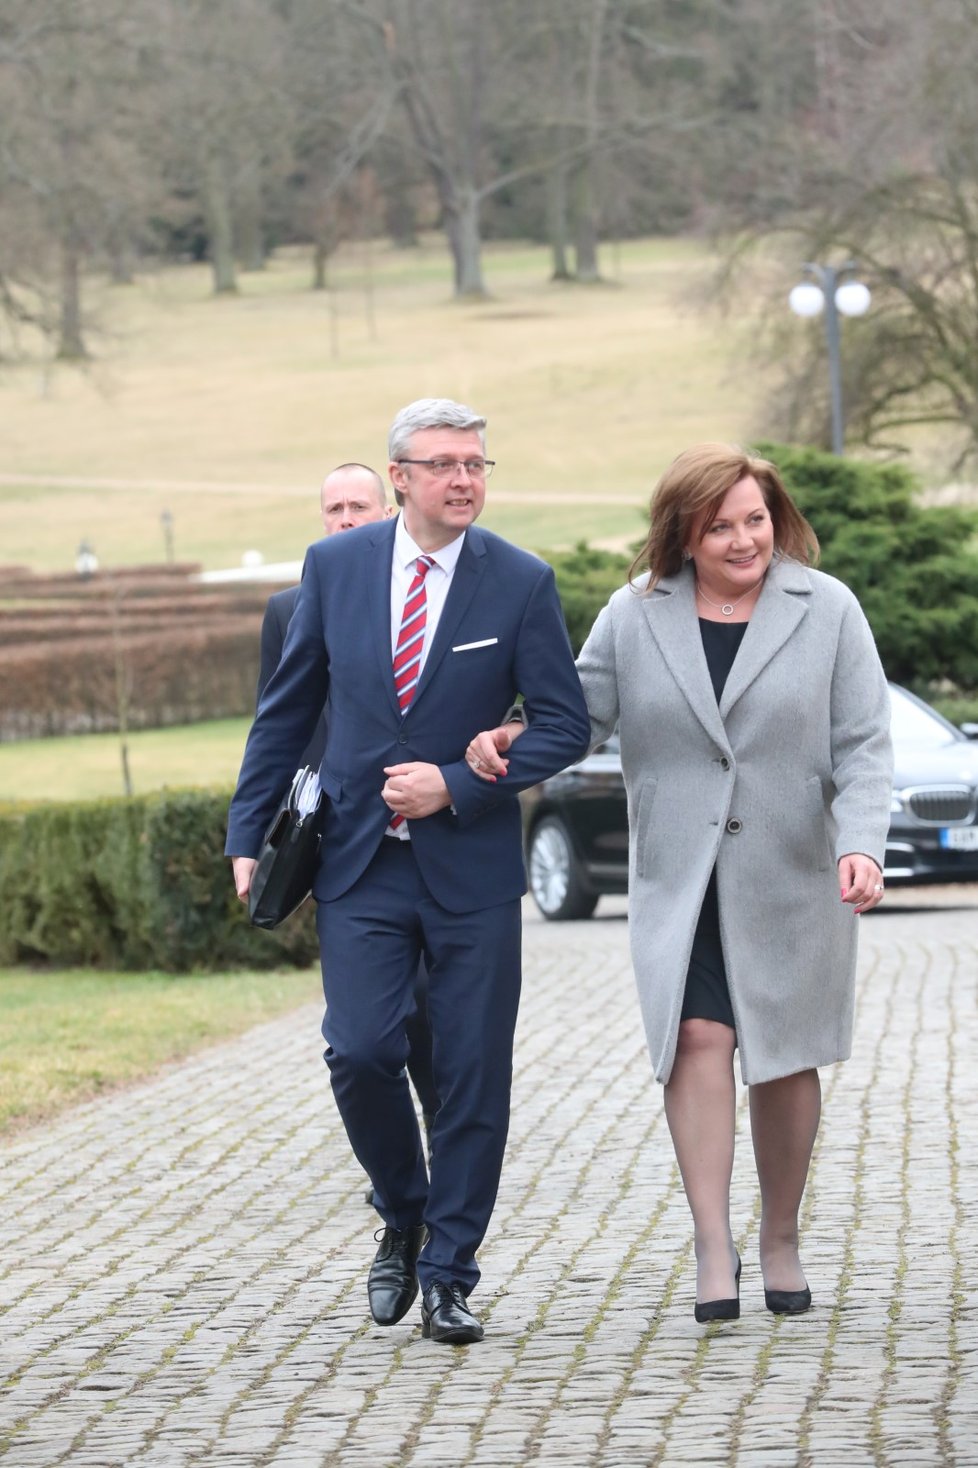 Ministryně financí Alena Schillerová a vicepremiér Karel Havlíček po obědě vlády s prezidentem v Lánech (24. 2. 2020)